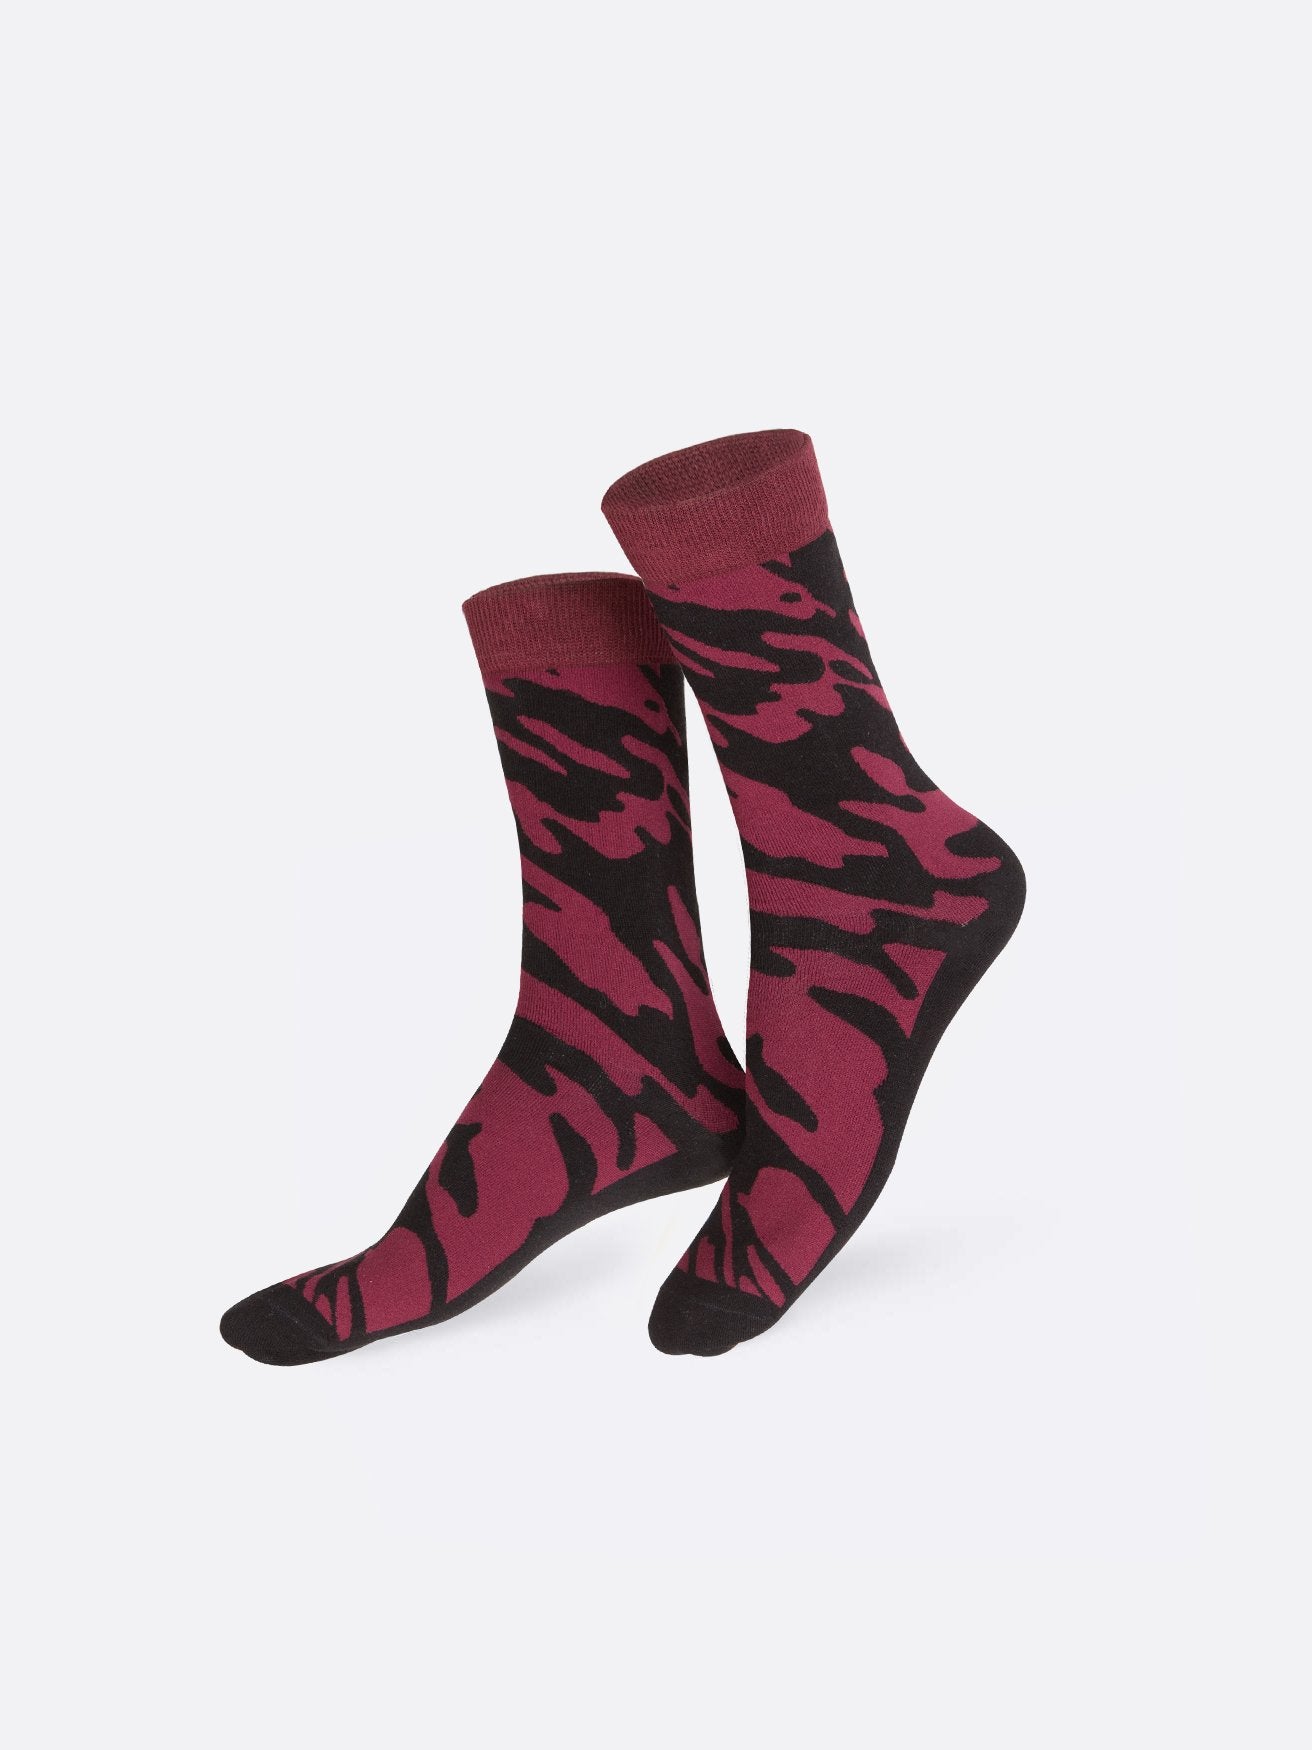 Red Wine Socks - Socks